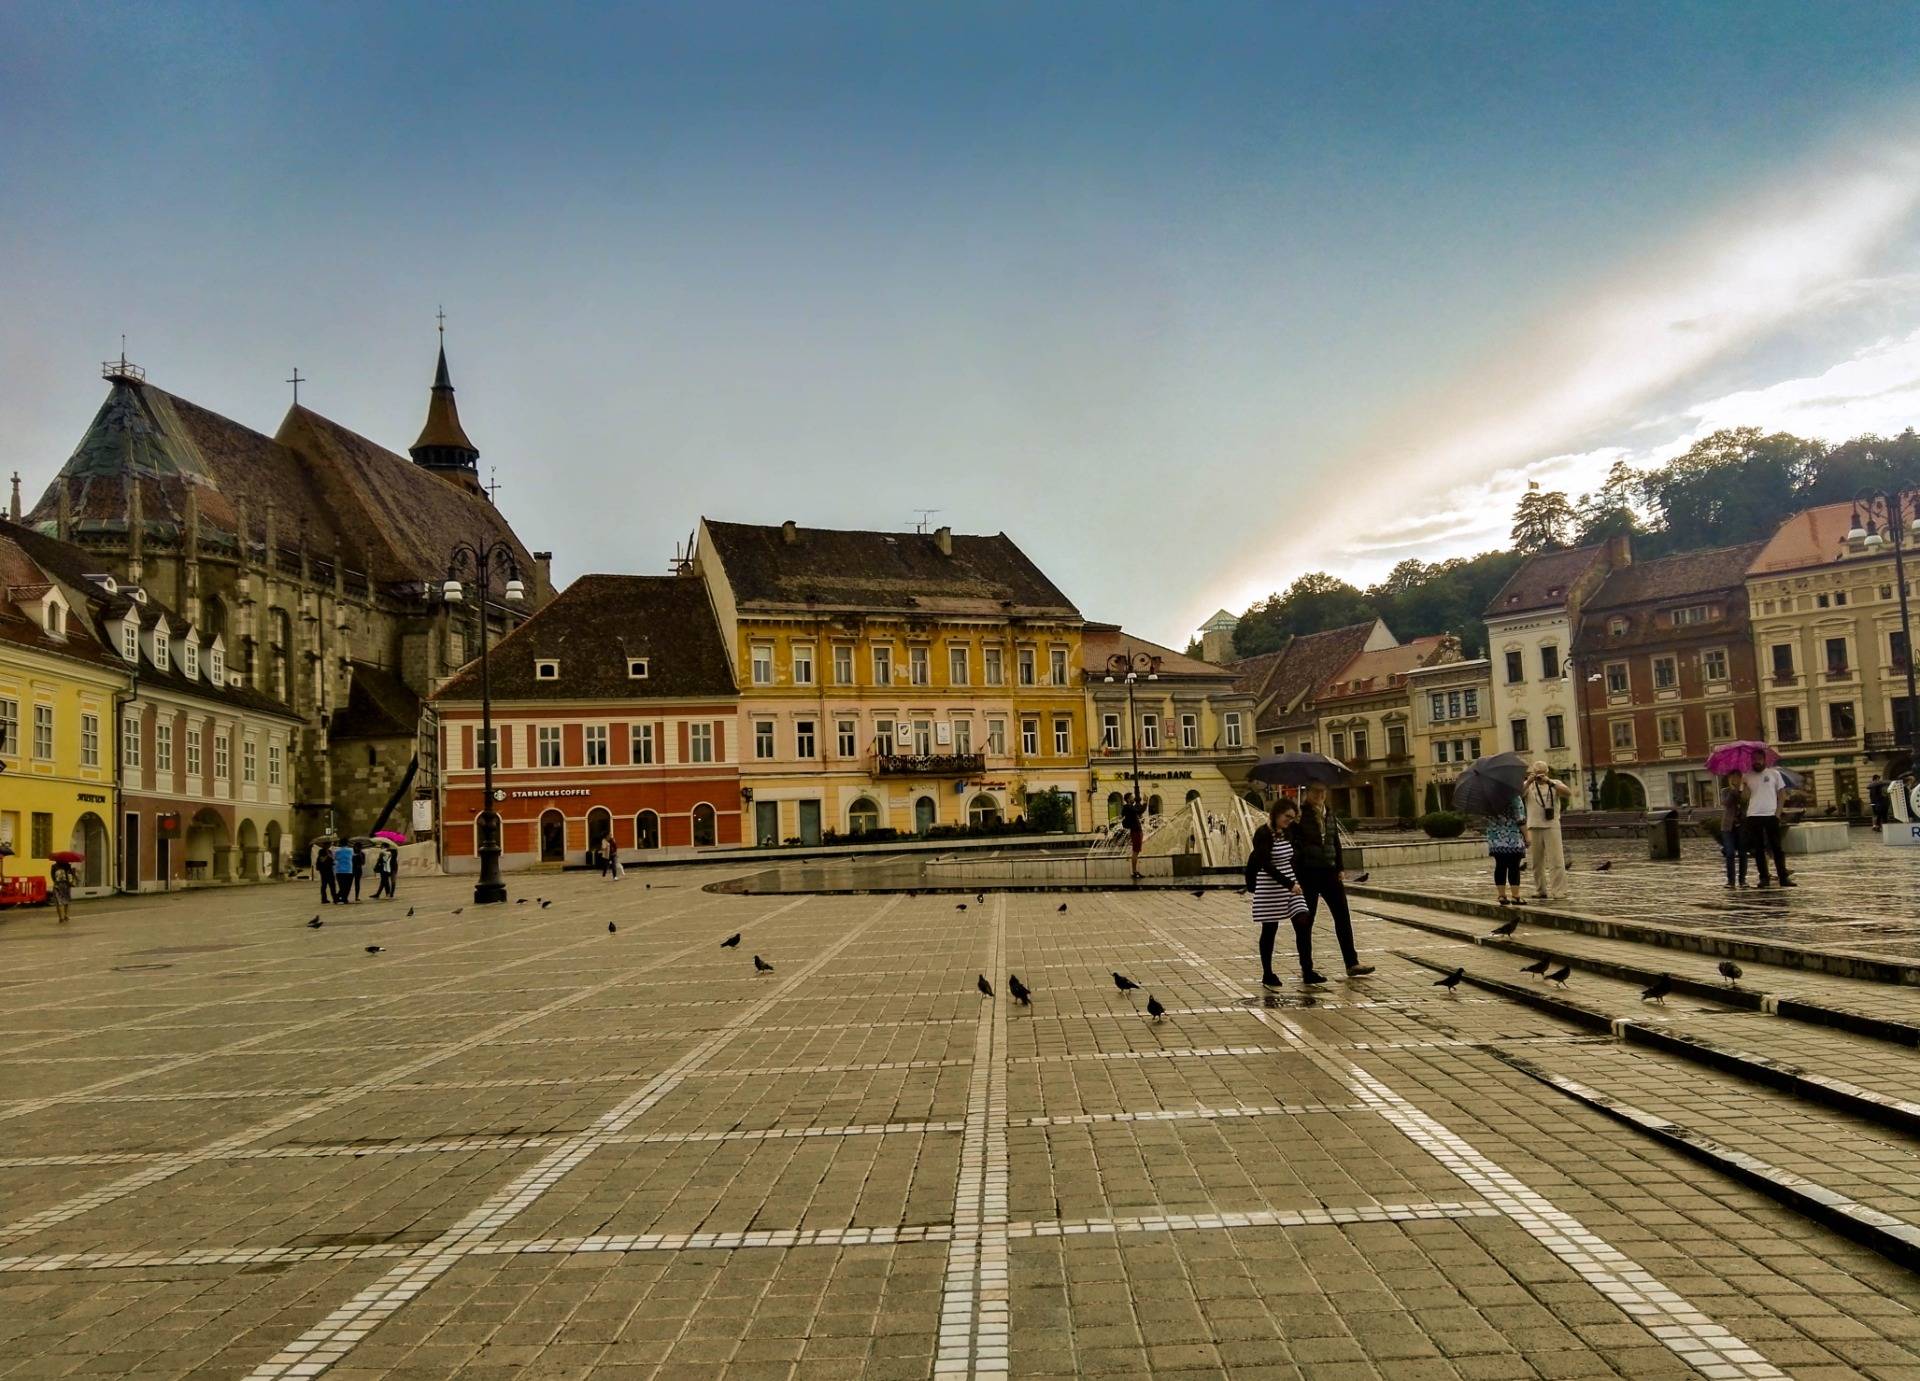 The main square in Brasov